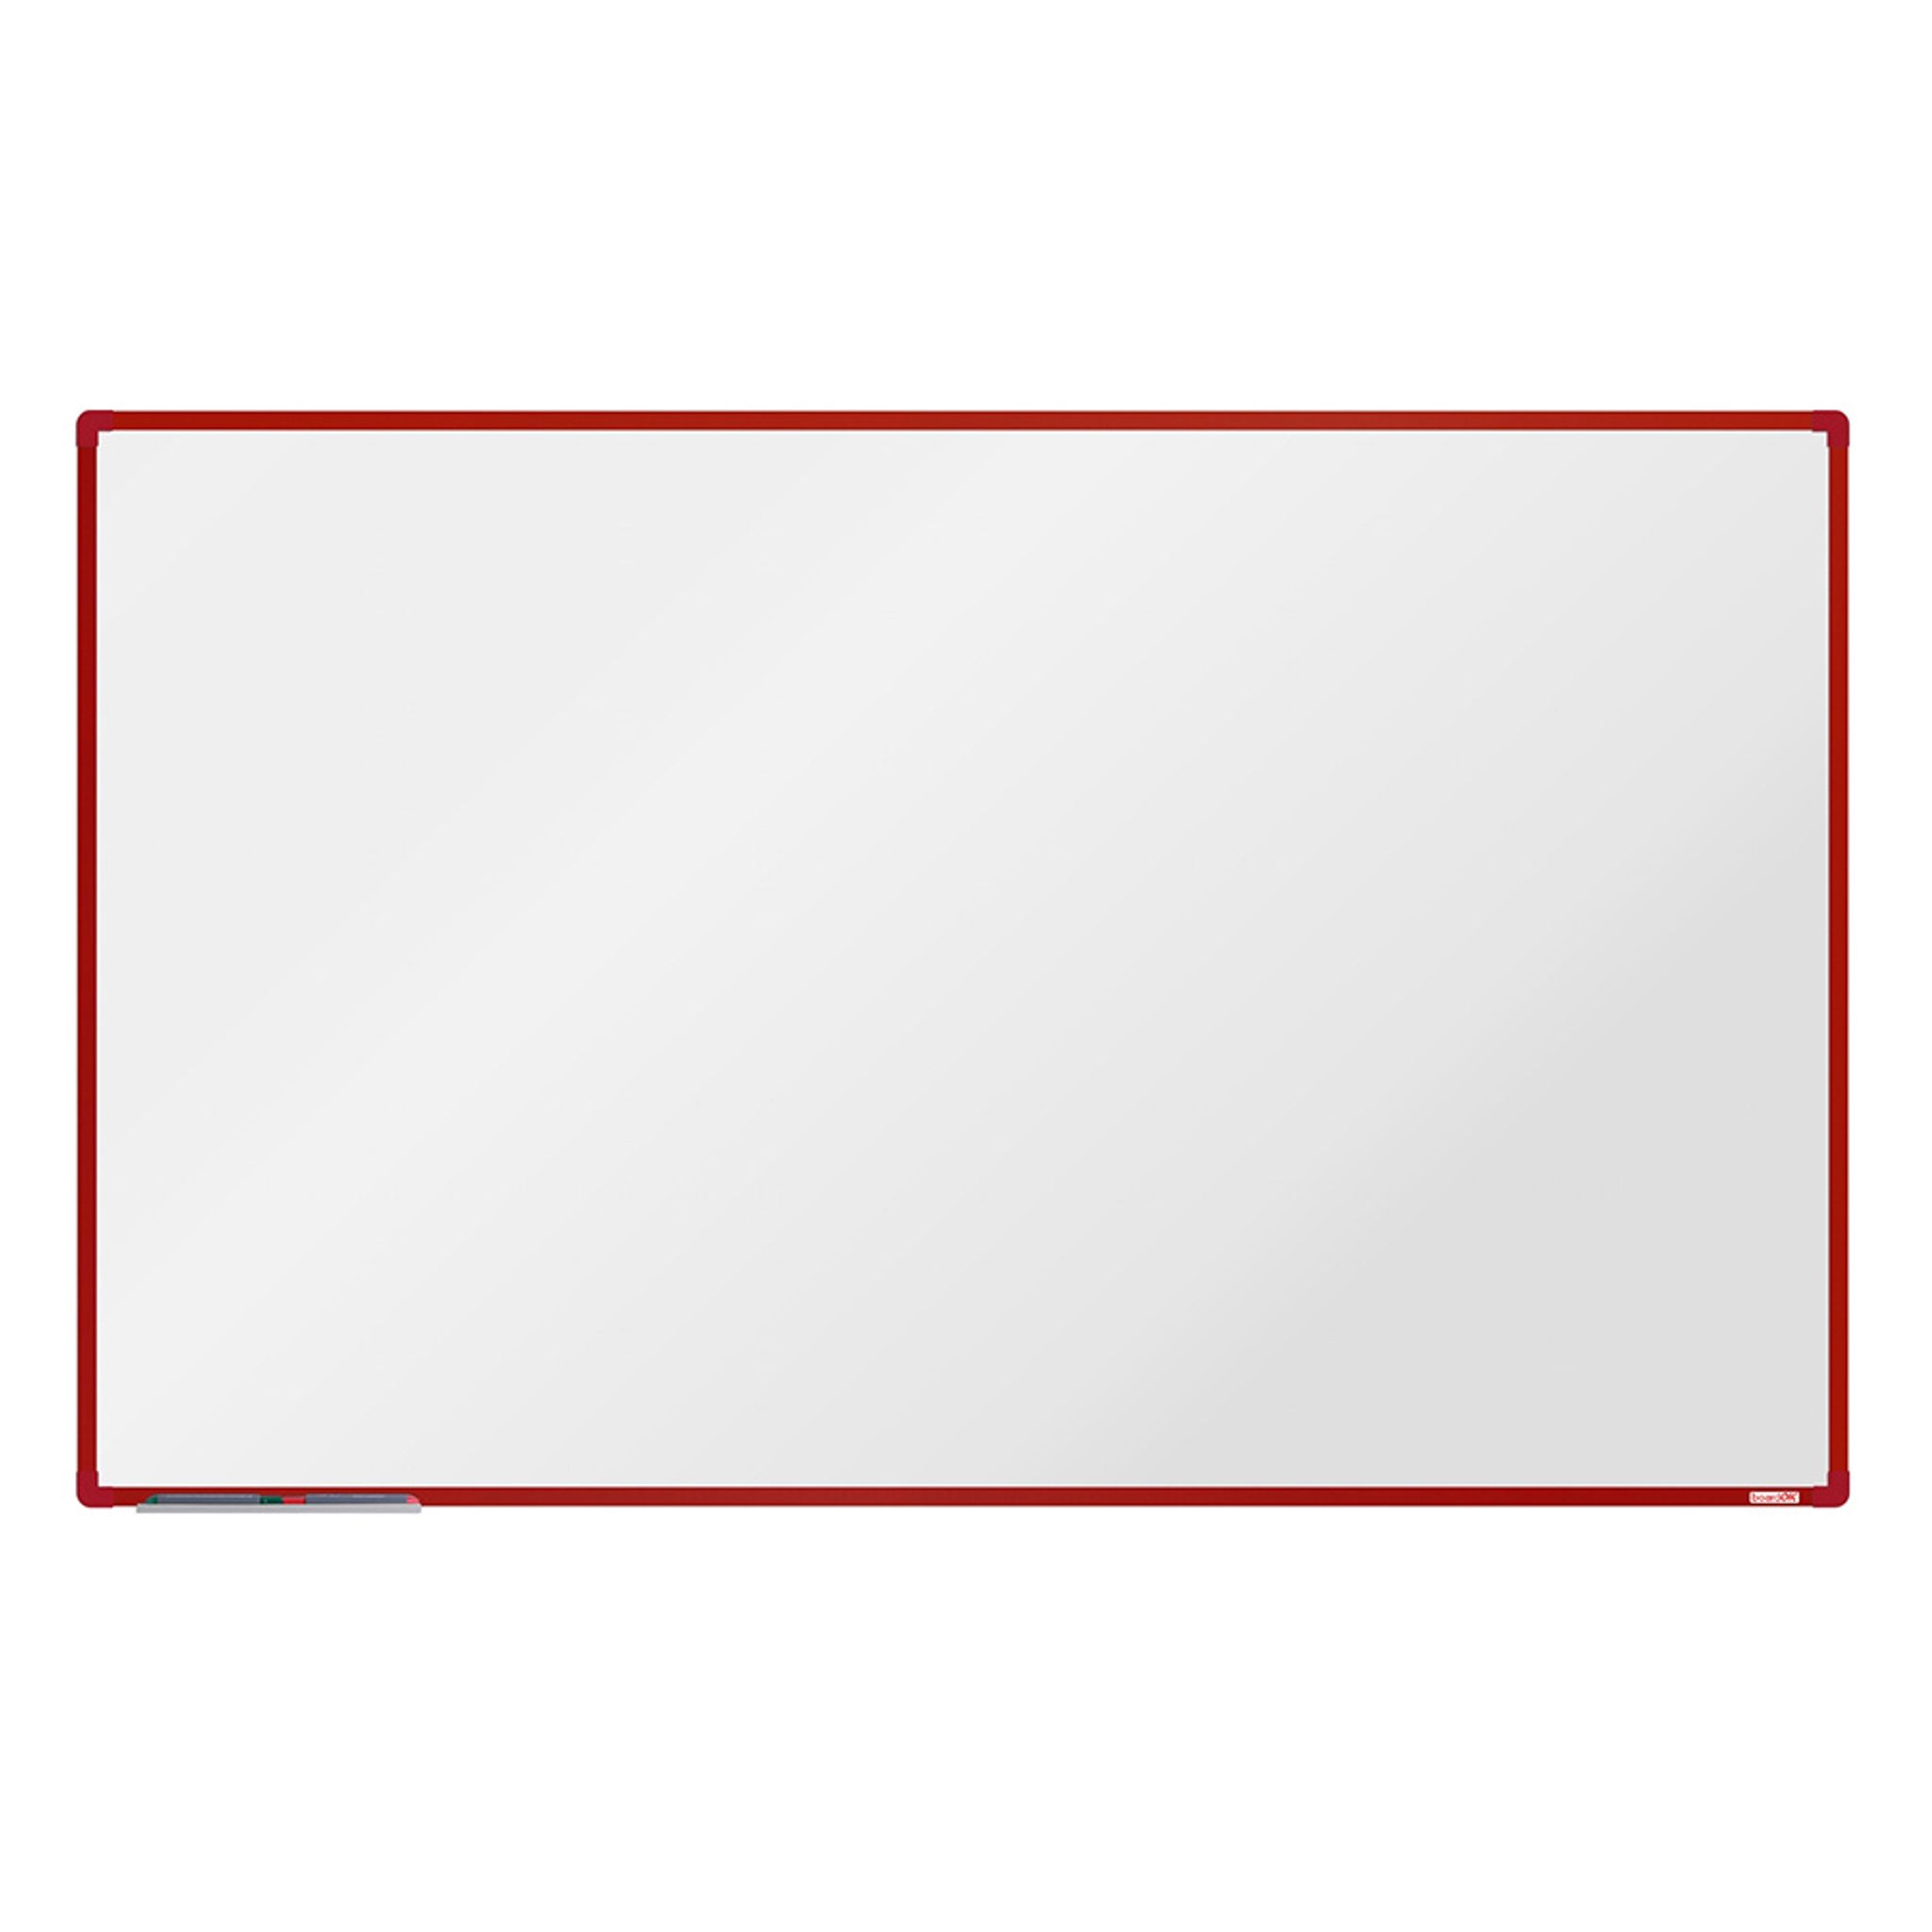 Biała magnetyczna tablica do pisania boardOK 2000 x 1200 mm, czerwona rama